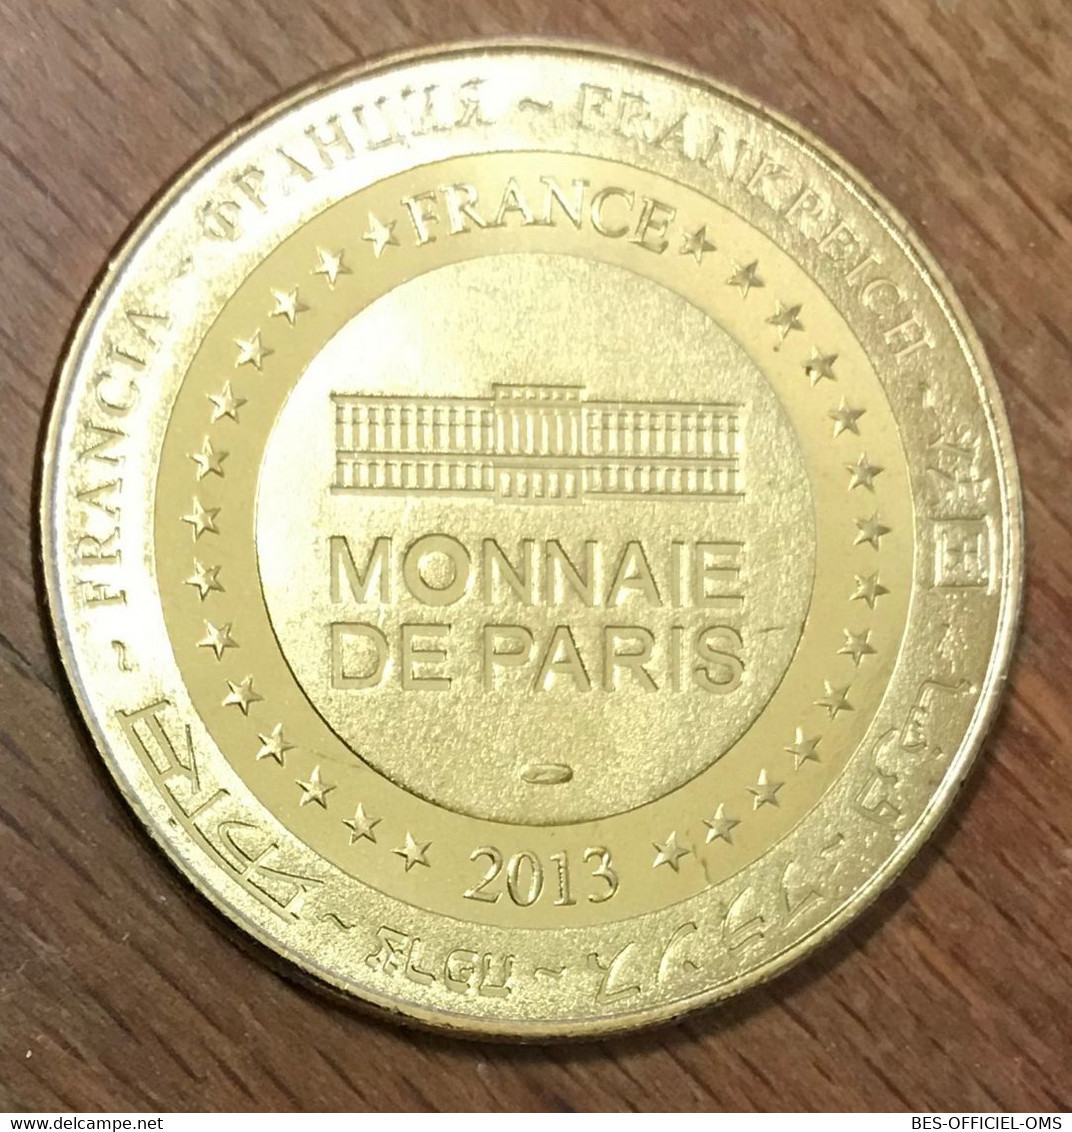 13 MARSEILLE RUE DE L'AÏOLI N°2 MDP 2013 MÉDAILLE MONNAIE DE PARIS JETON TOURISTIQUE MEDALS COINS TOKENS - 2013